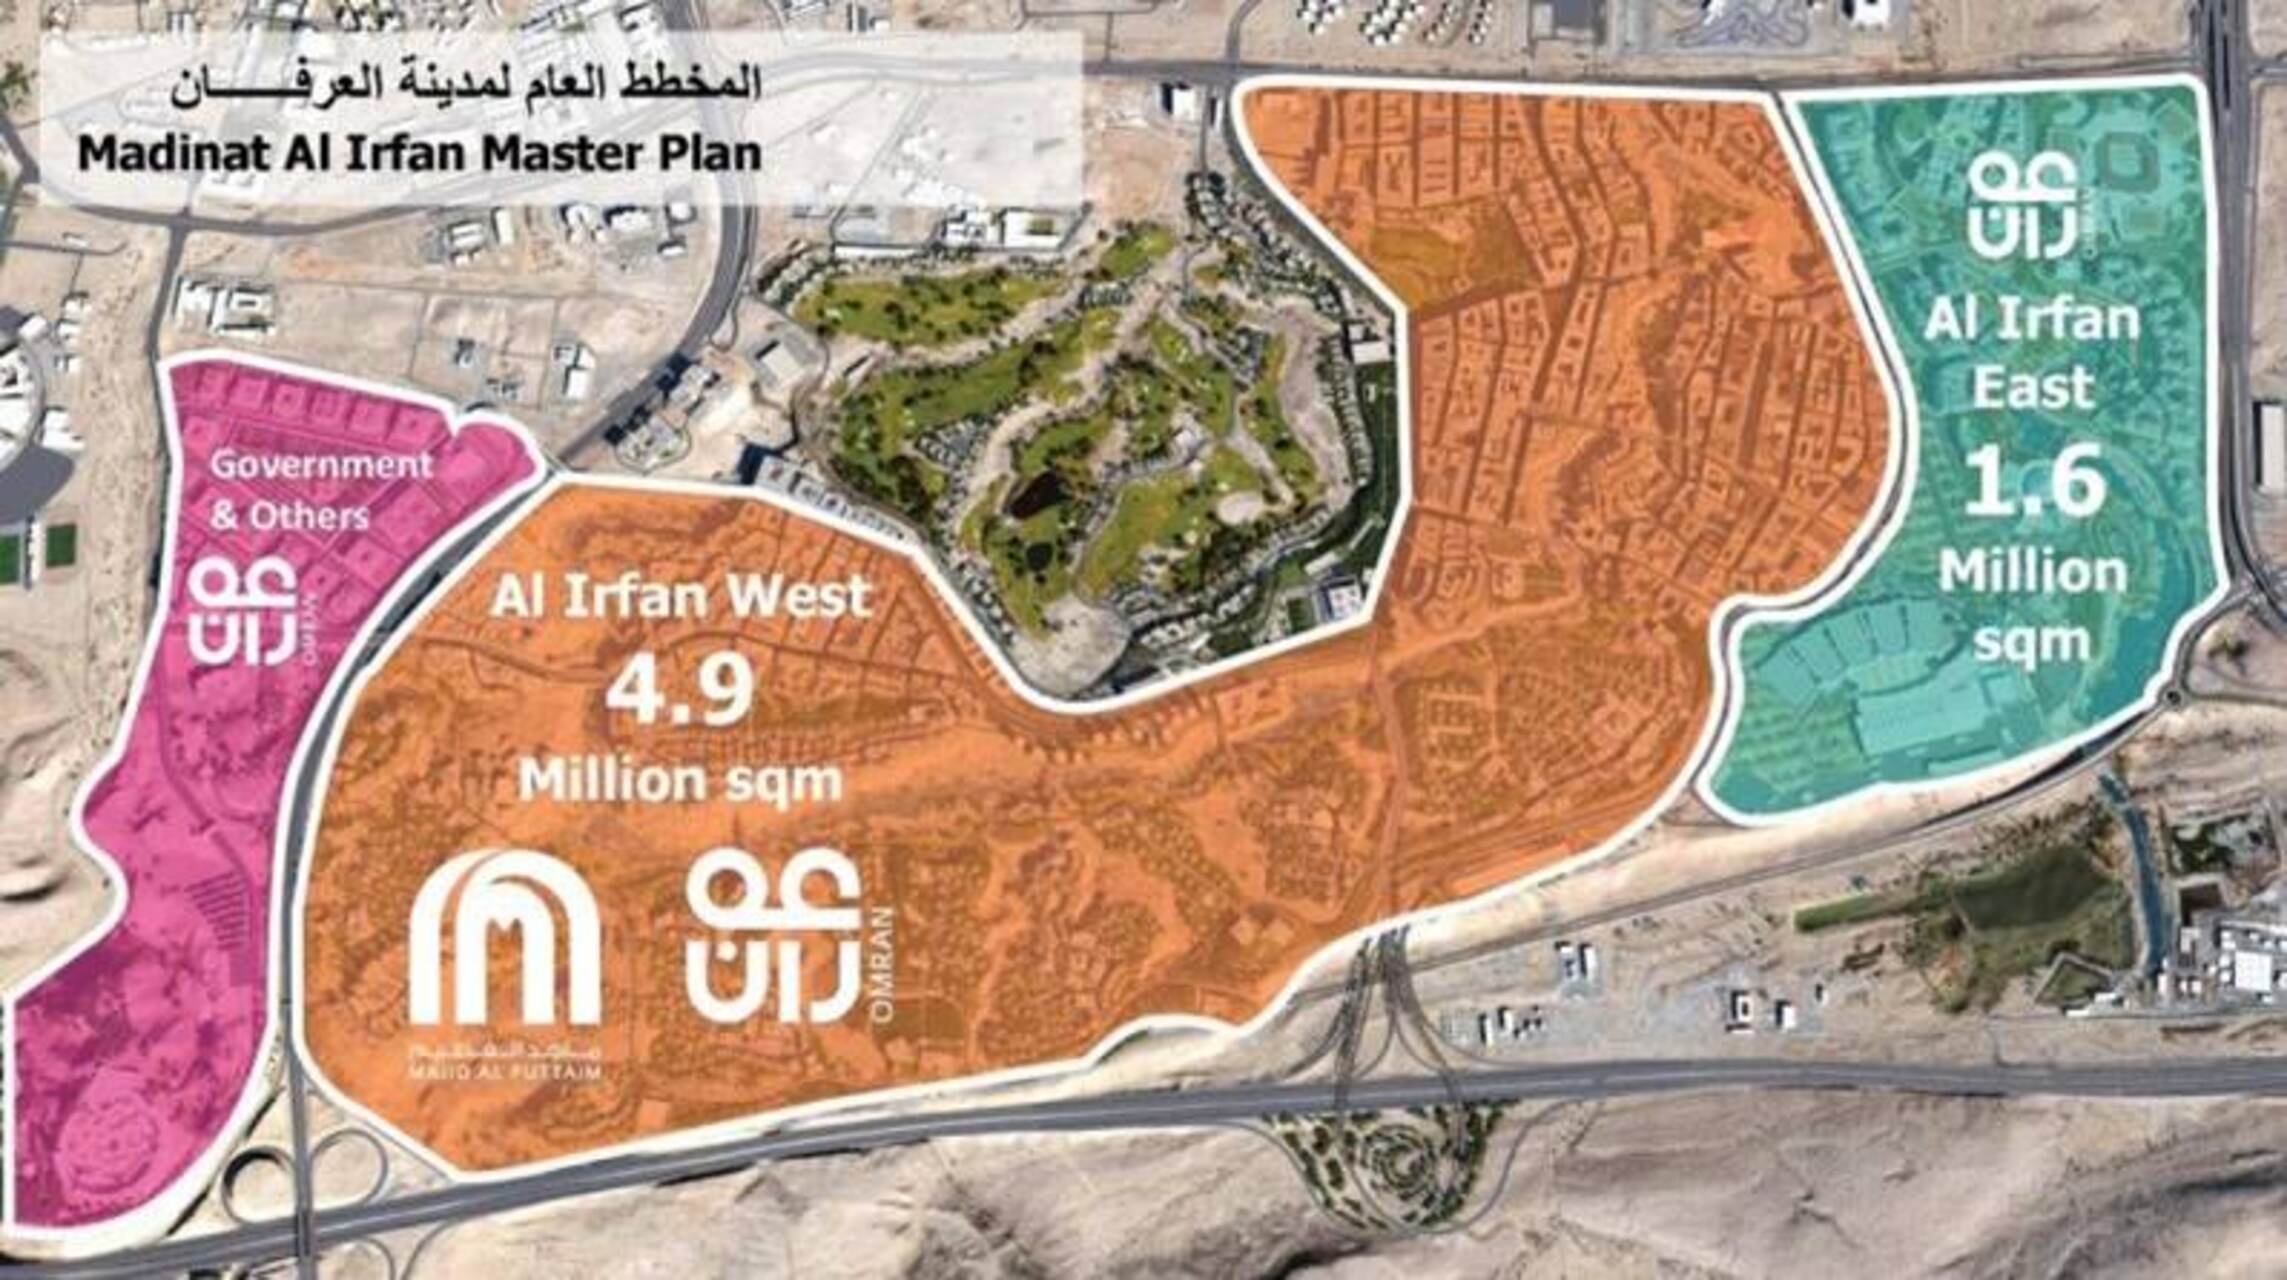 Мадинат ал Ирфан: највећи пројекат мешовите употребе и одрживог урбаног развоја који је осмислила, креирала и води ОМРАН група у Оману